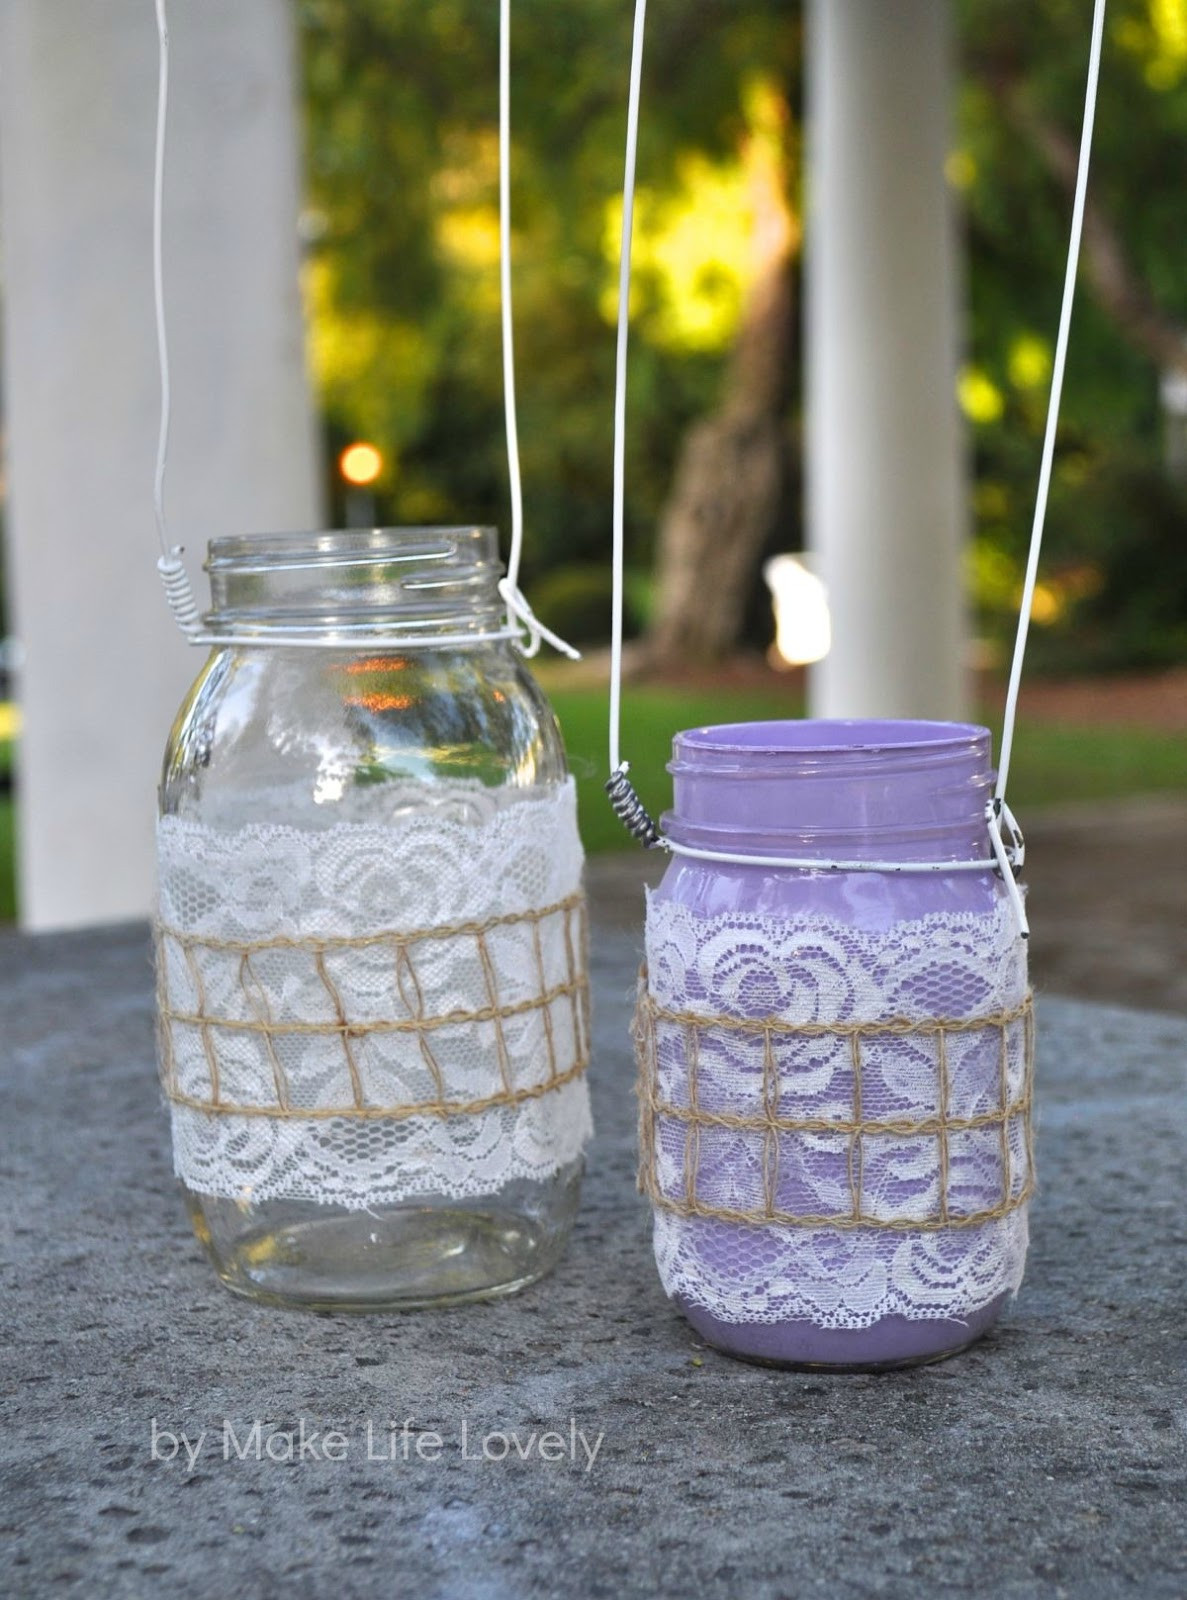 Best ideas about DIY Mason Jar
. Save or Pin DIY Mason Jar Lanterns Make Life Lovely Now.